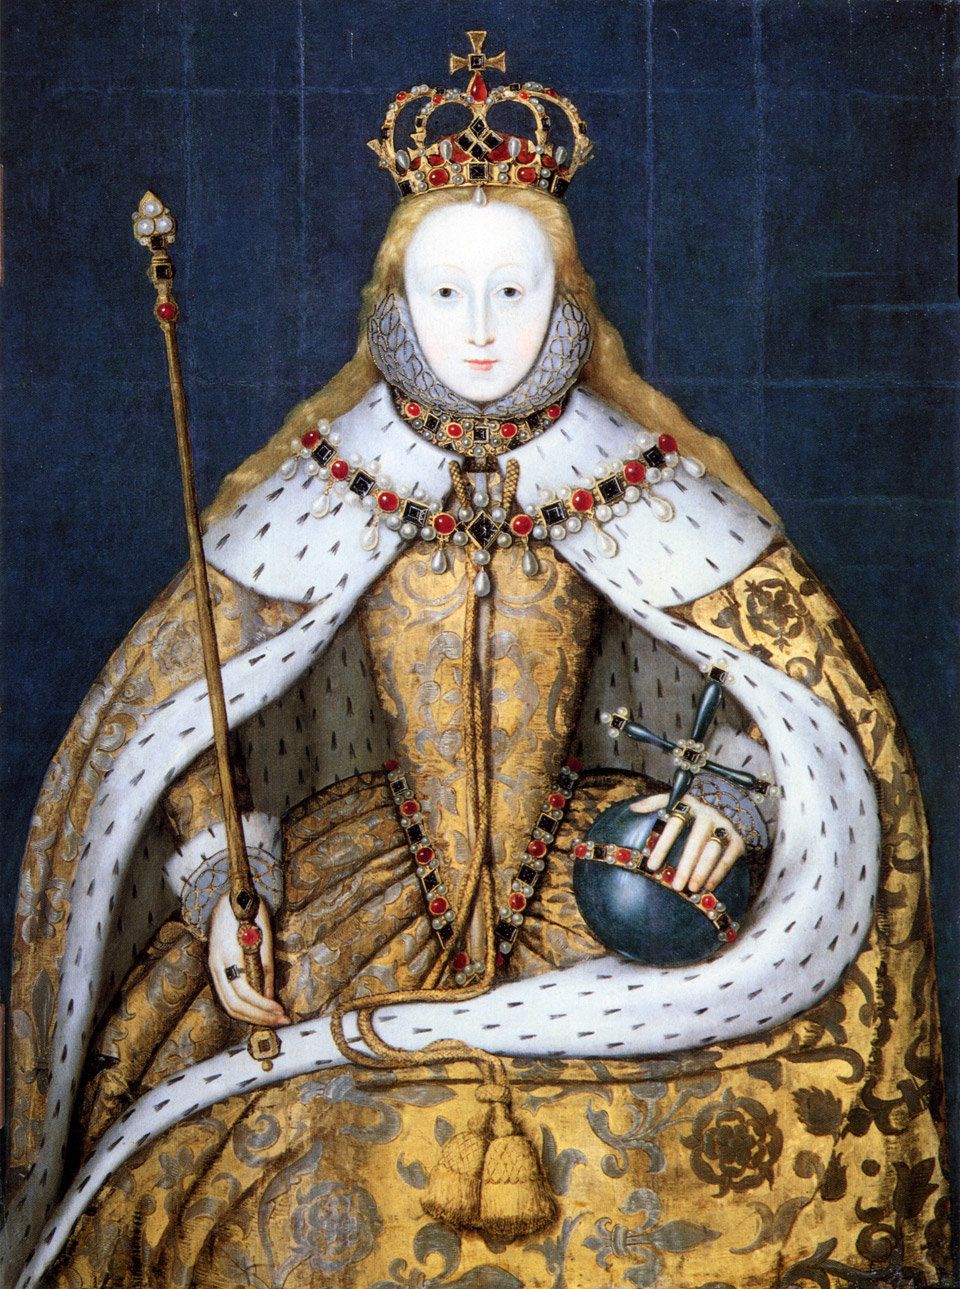 Πορτραίτο της βασίλισσας Ελισάβετ Α΄. Έργο αγνώστου, φιλοτεχνημένο περί το 1600. Η Ελισάβετ εικονίζεται με την χαρακτηριστική, κατάλευκη επιδερμίδα της. Την διατηρούσε χρησιμοποιώντας πούδρα από λευκό μόλυβδο, όπως έκαναν οι γυναίκες στον αρχαίο κόσμο. Λονδίνο, National Portrait Gallery.